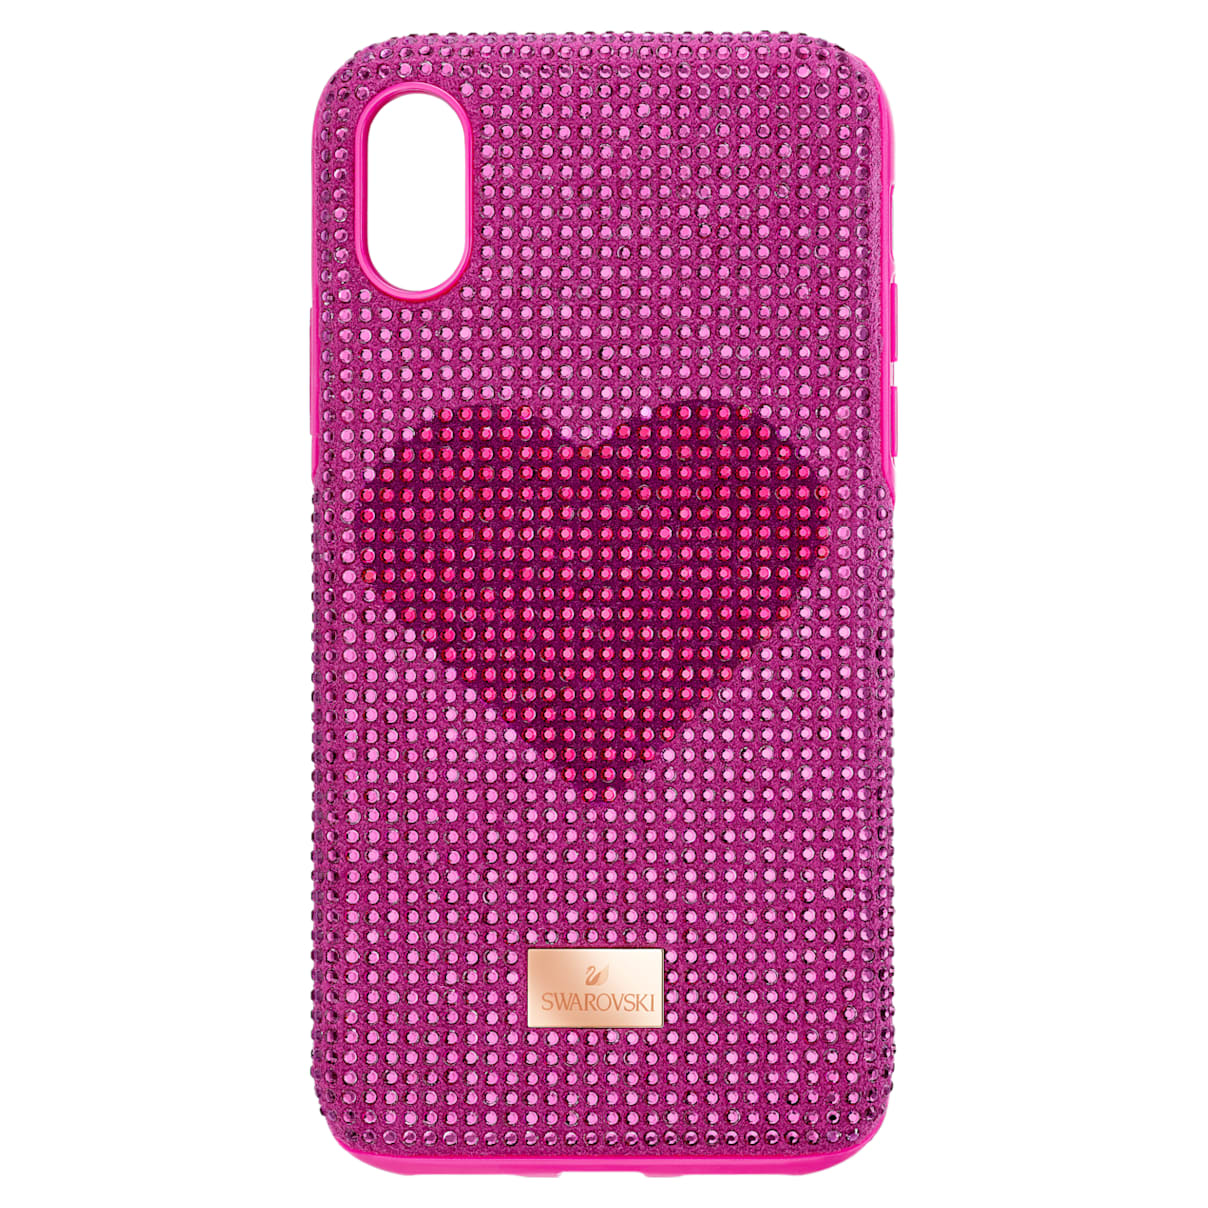 Custodia per smartphone con bordi protettivi Crystalgram Heart, iPhone® X/XS, rosa